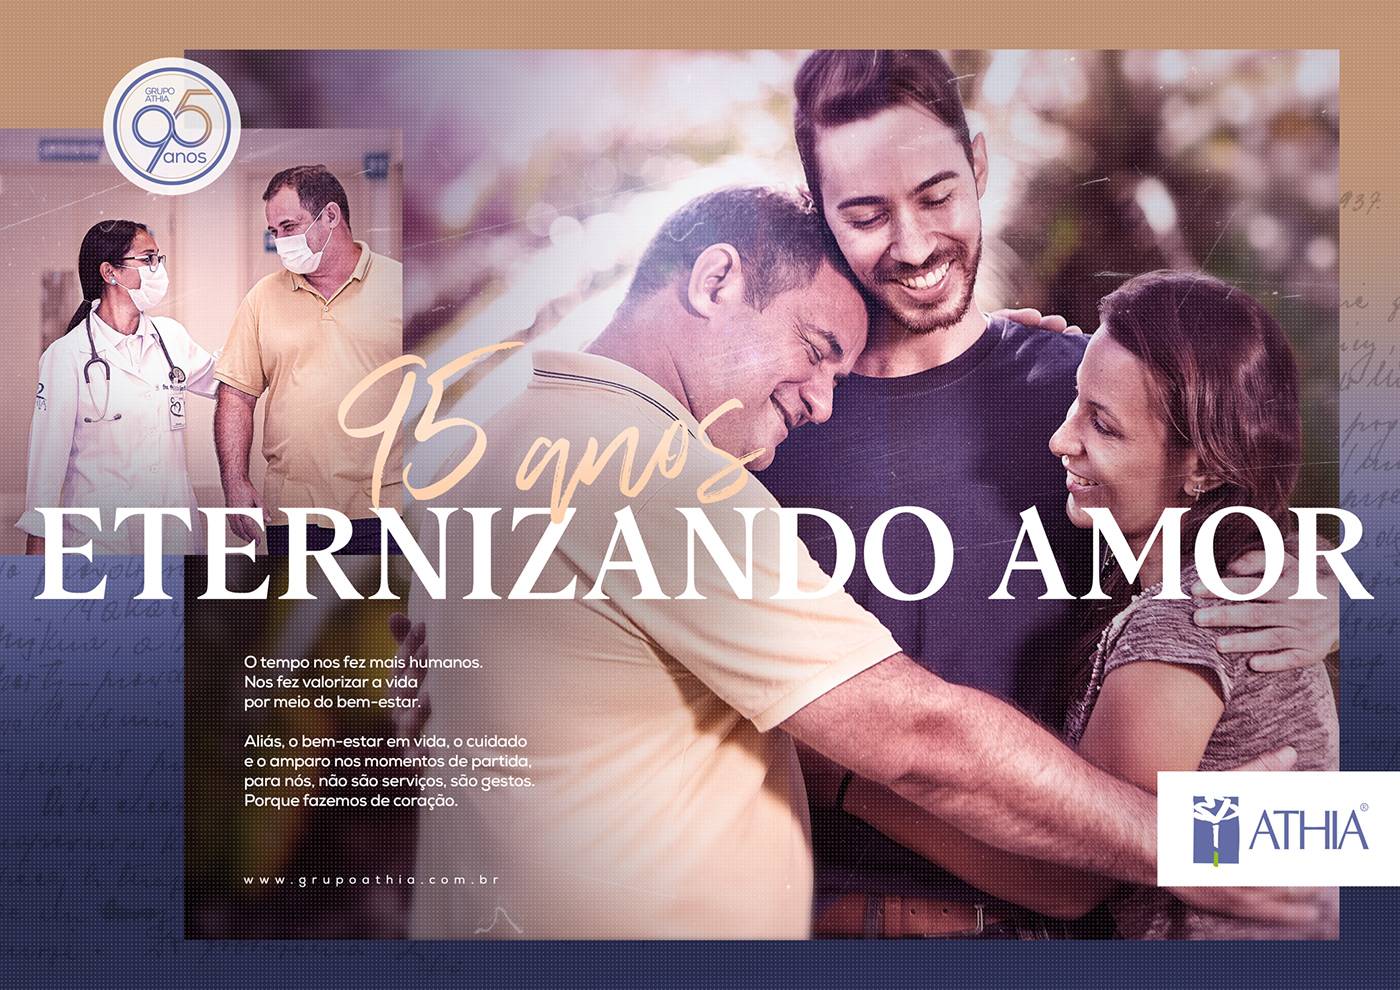 ad Advertising  assistência familiar athia campanha eternizando amor funeraria graphic design  publicidade